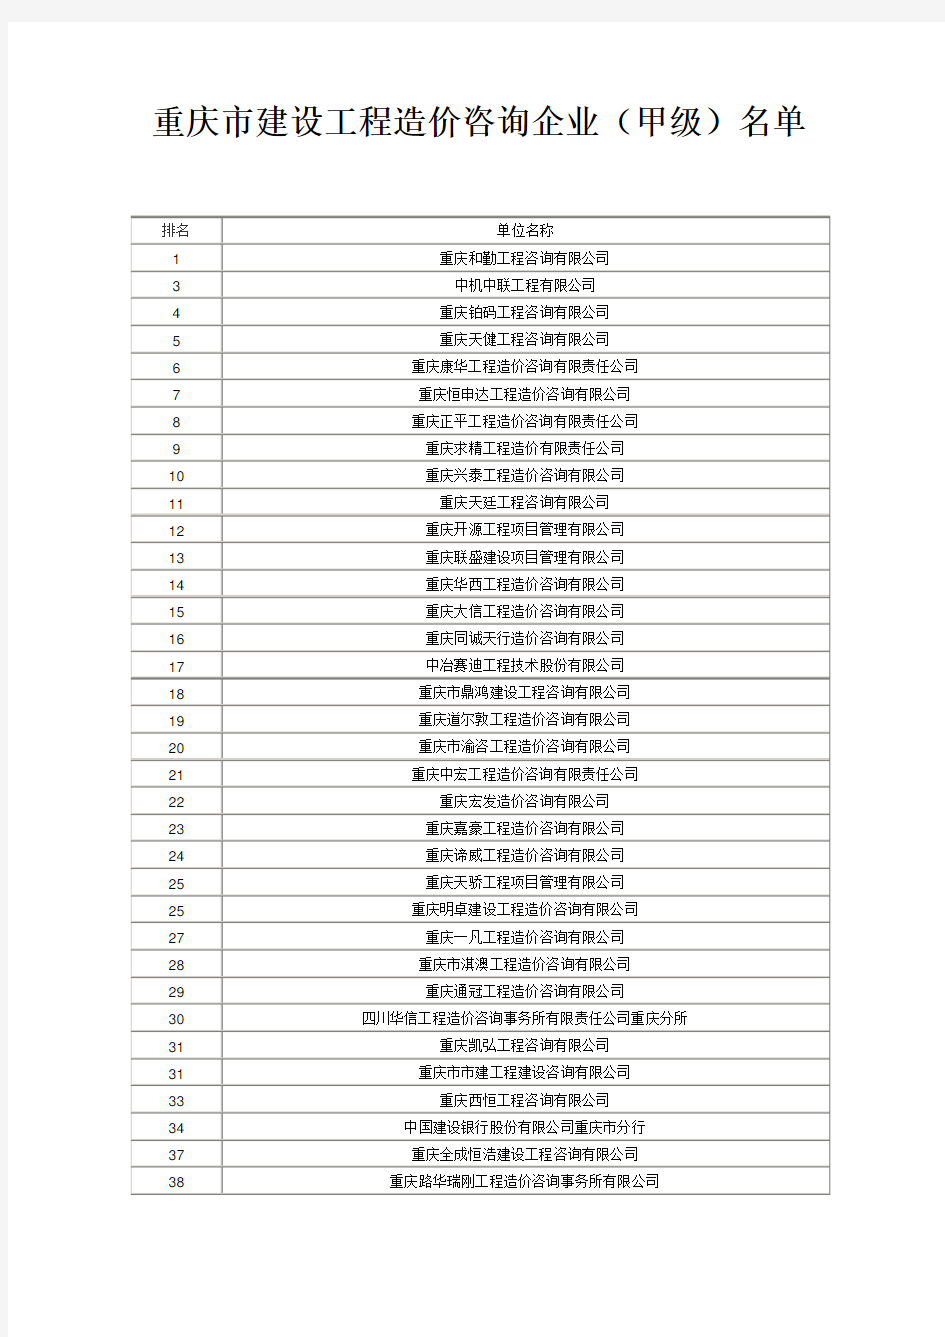 重庆市建设工程造价咨询企业(甲级)名单